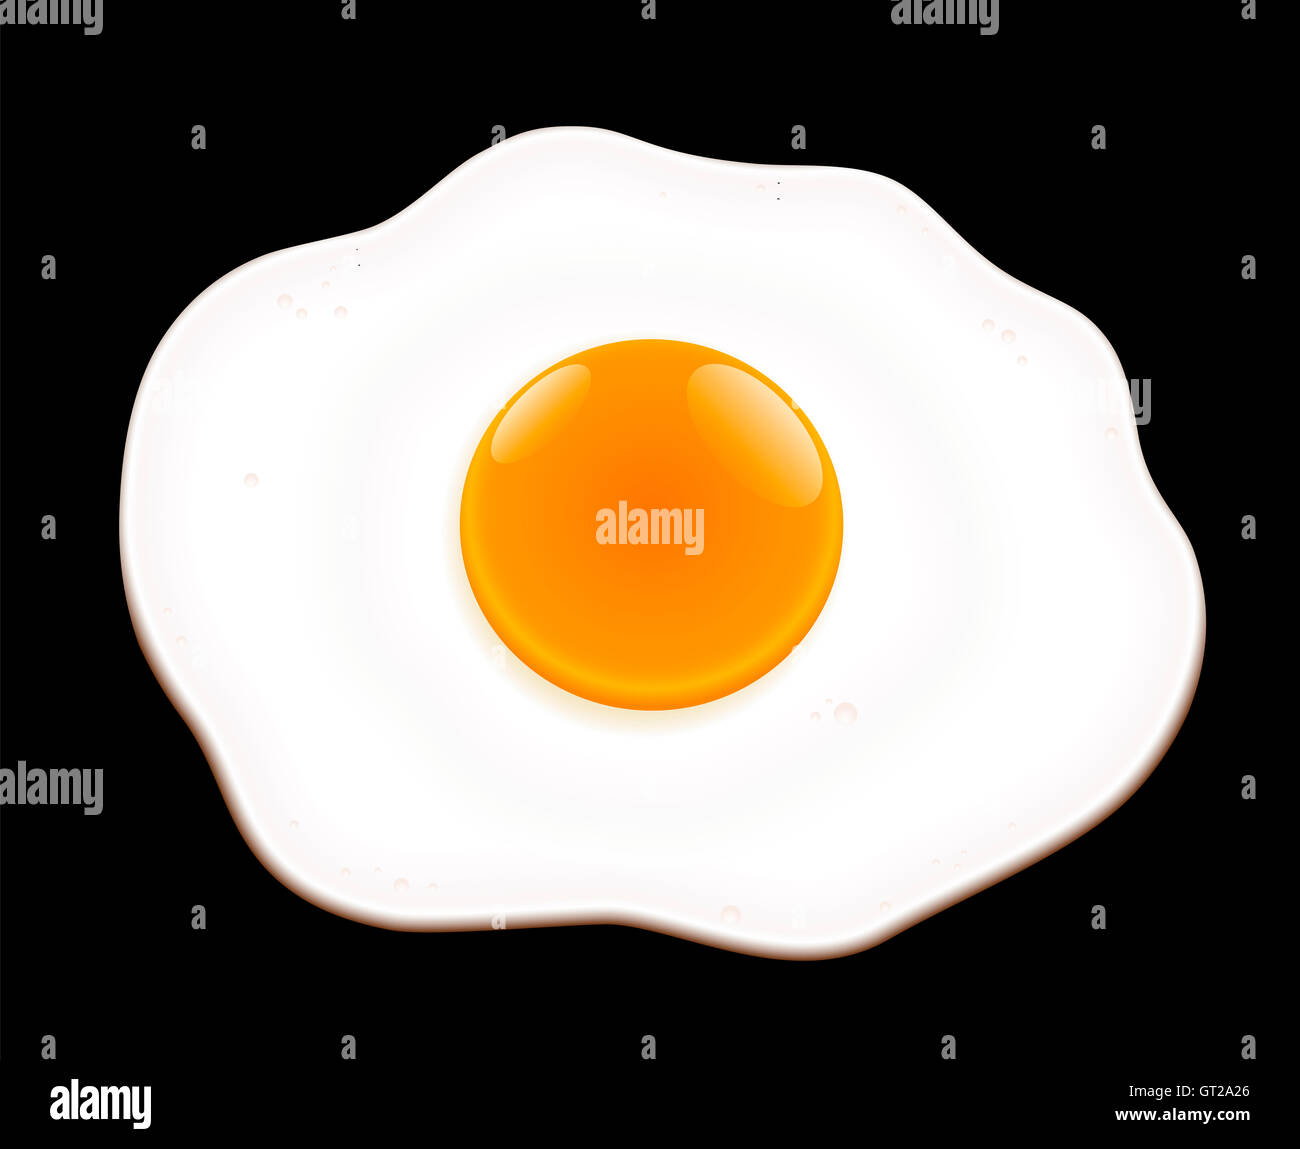 Gebratenes Ei auf schwarzem Hintergrund - Illustration. Stockfoto